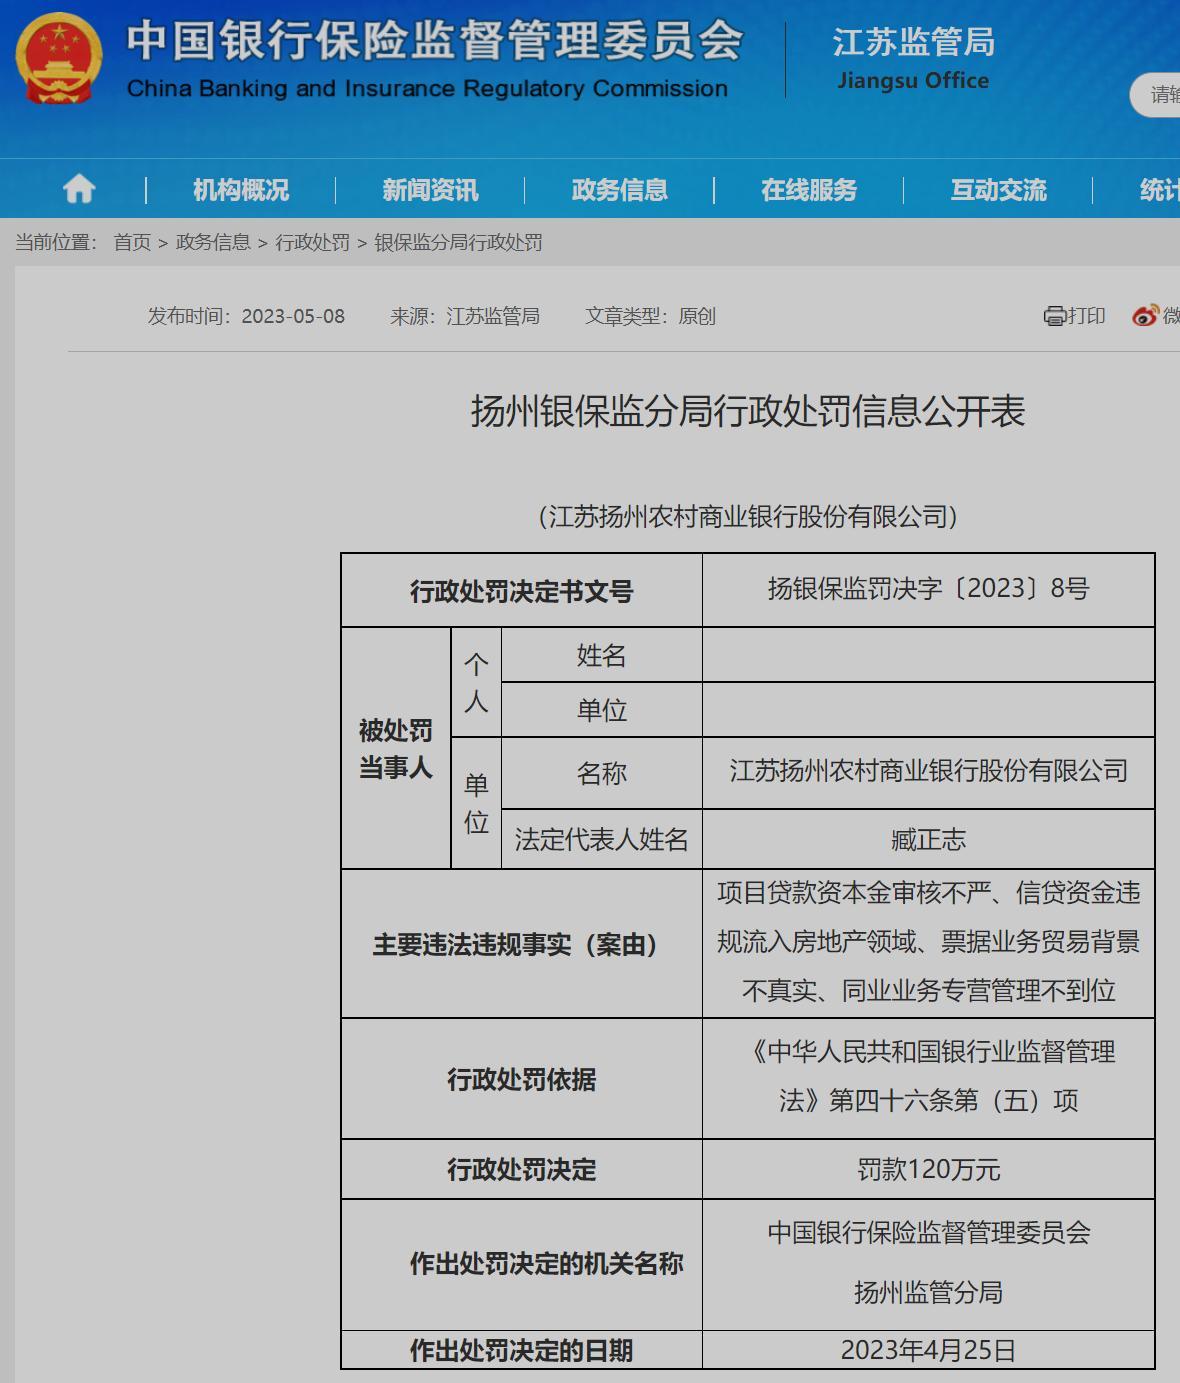 江苏扬州农村商业银行股份有限公司被罚120万元